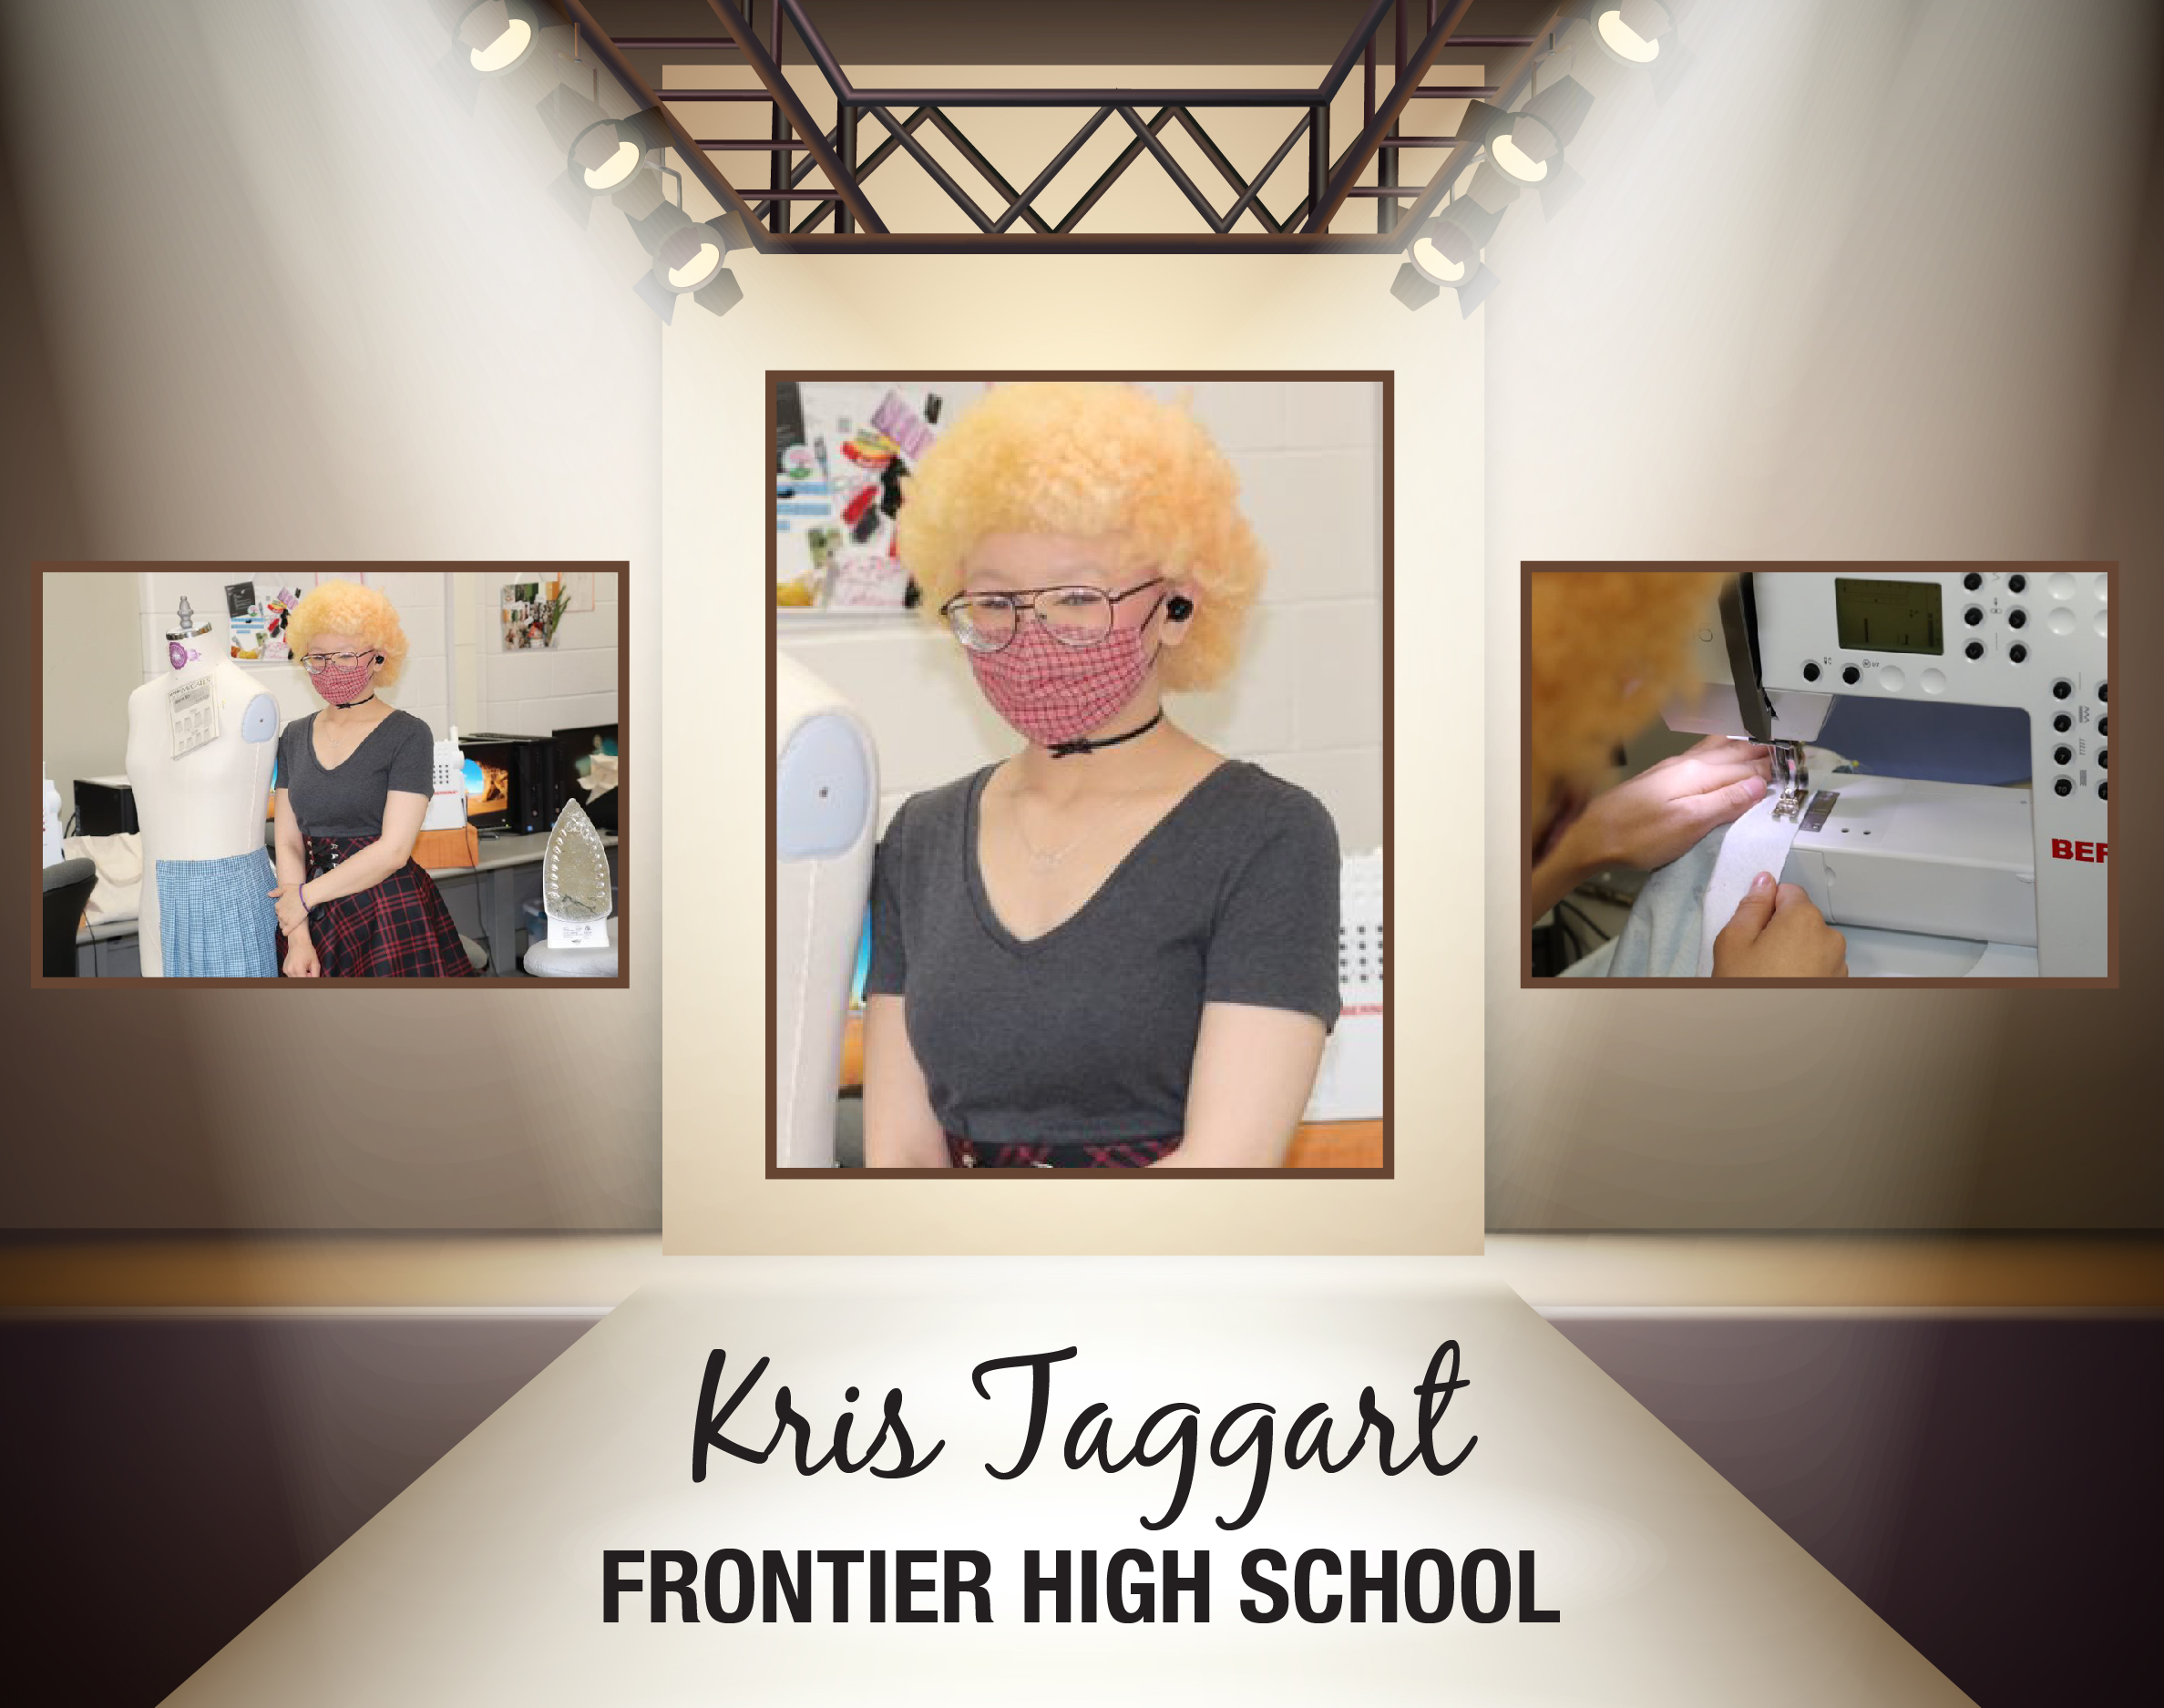 Kris Taggart Frontier High School